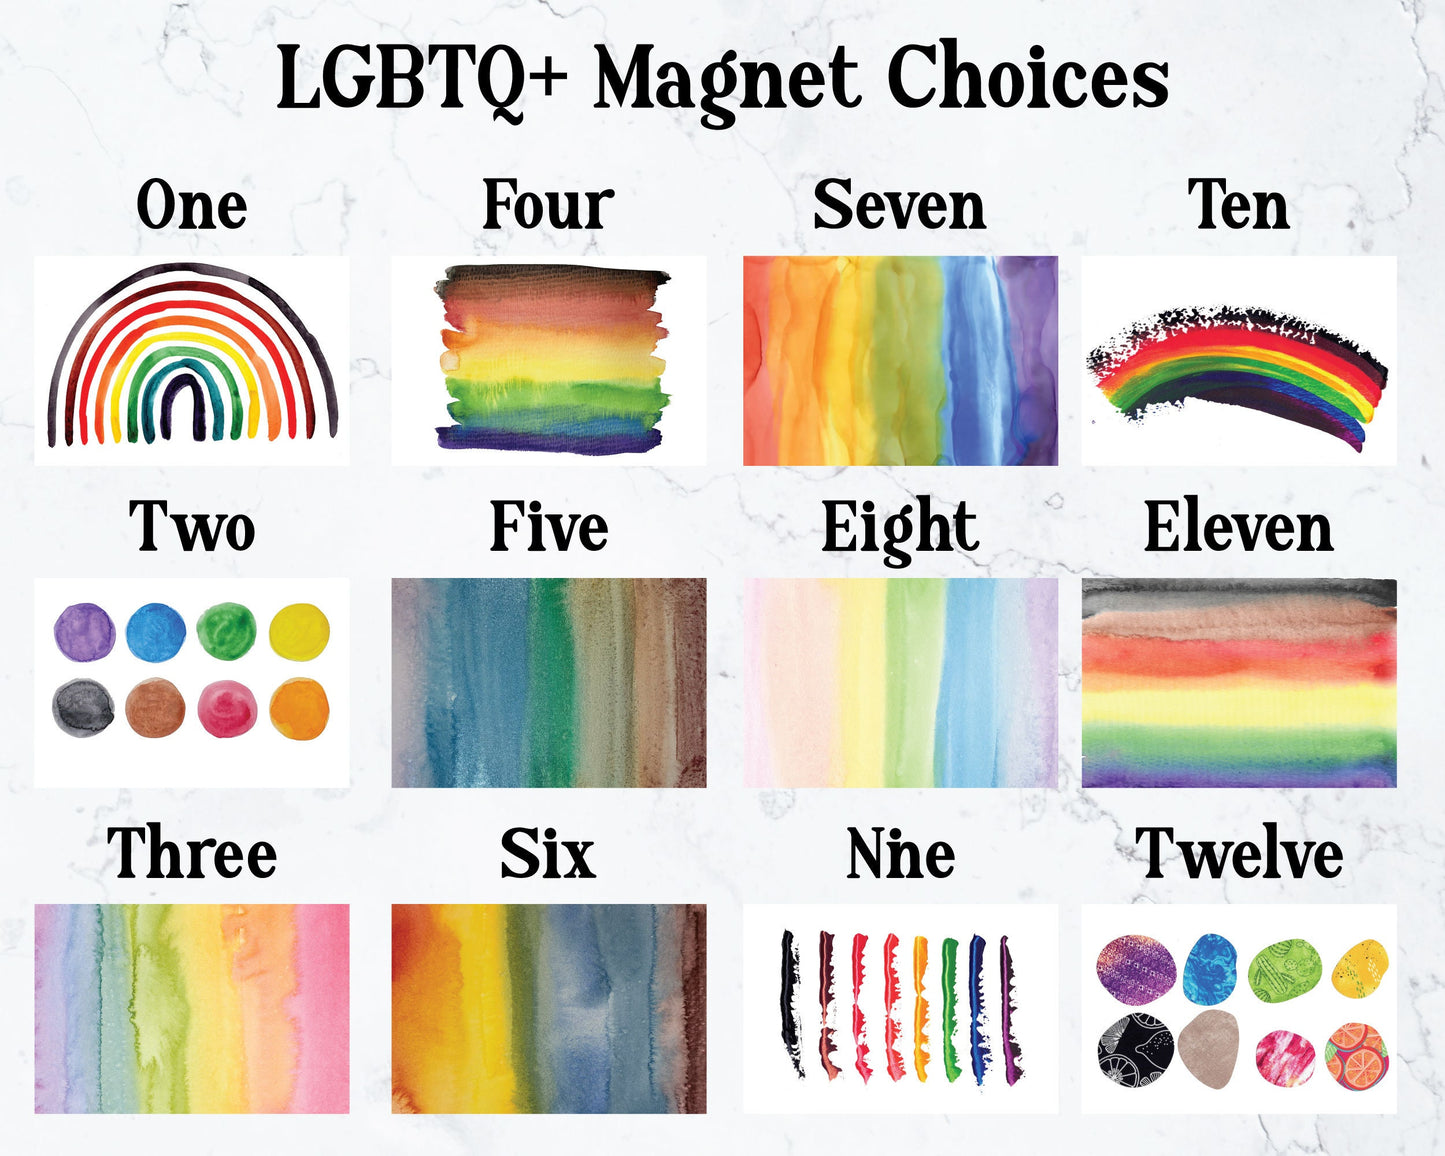 LGBTQ+ 2x3" Magnet